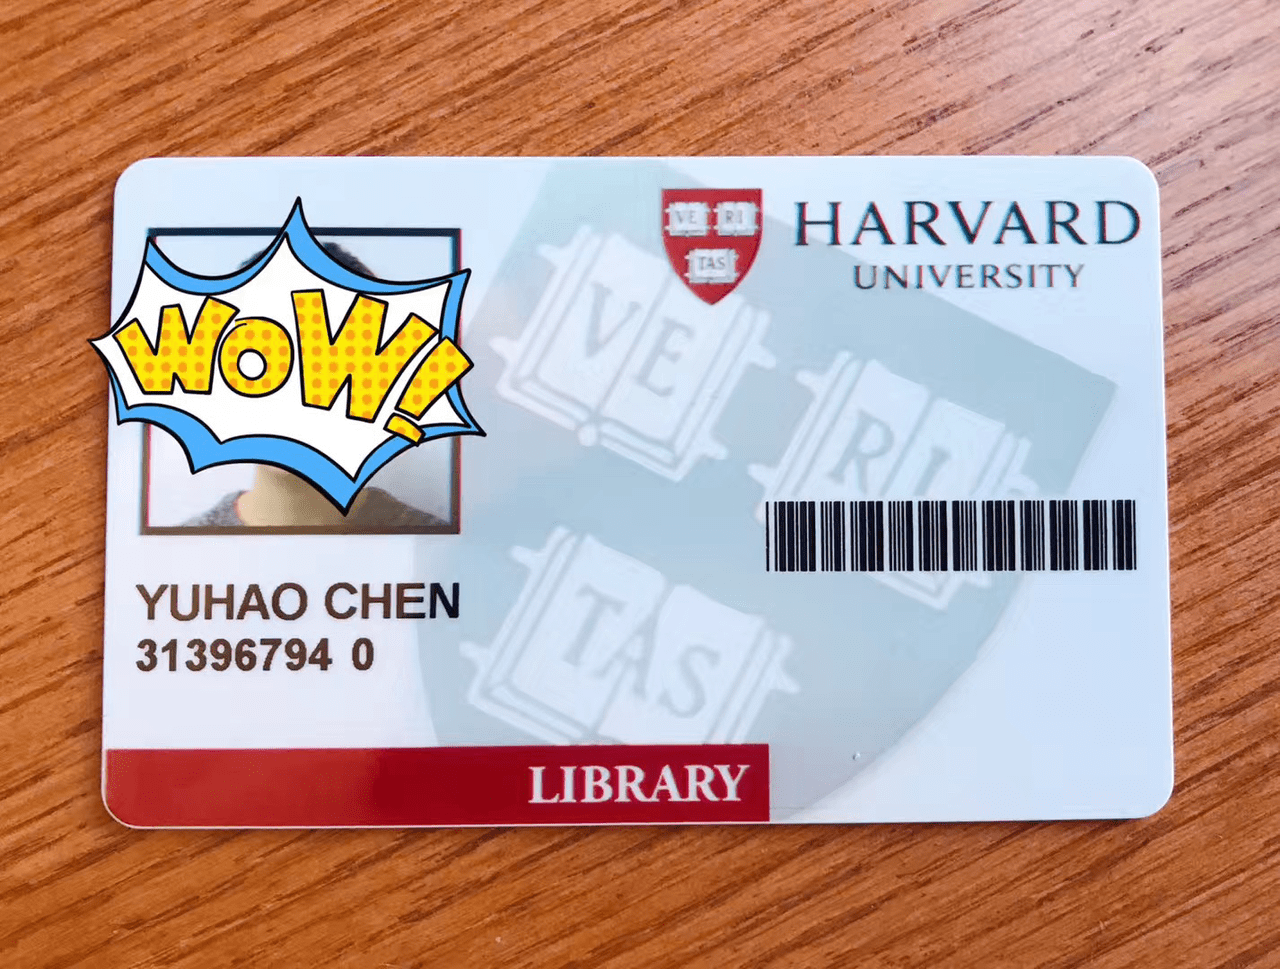 在 mit,你甚至可以蹭到一张哈佛大学图书馆的卡 独立交流的劣势